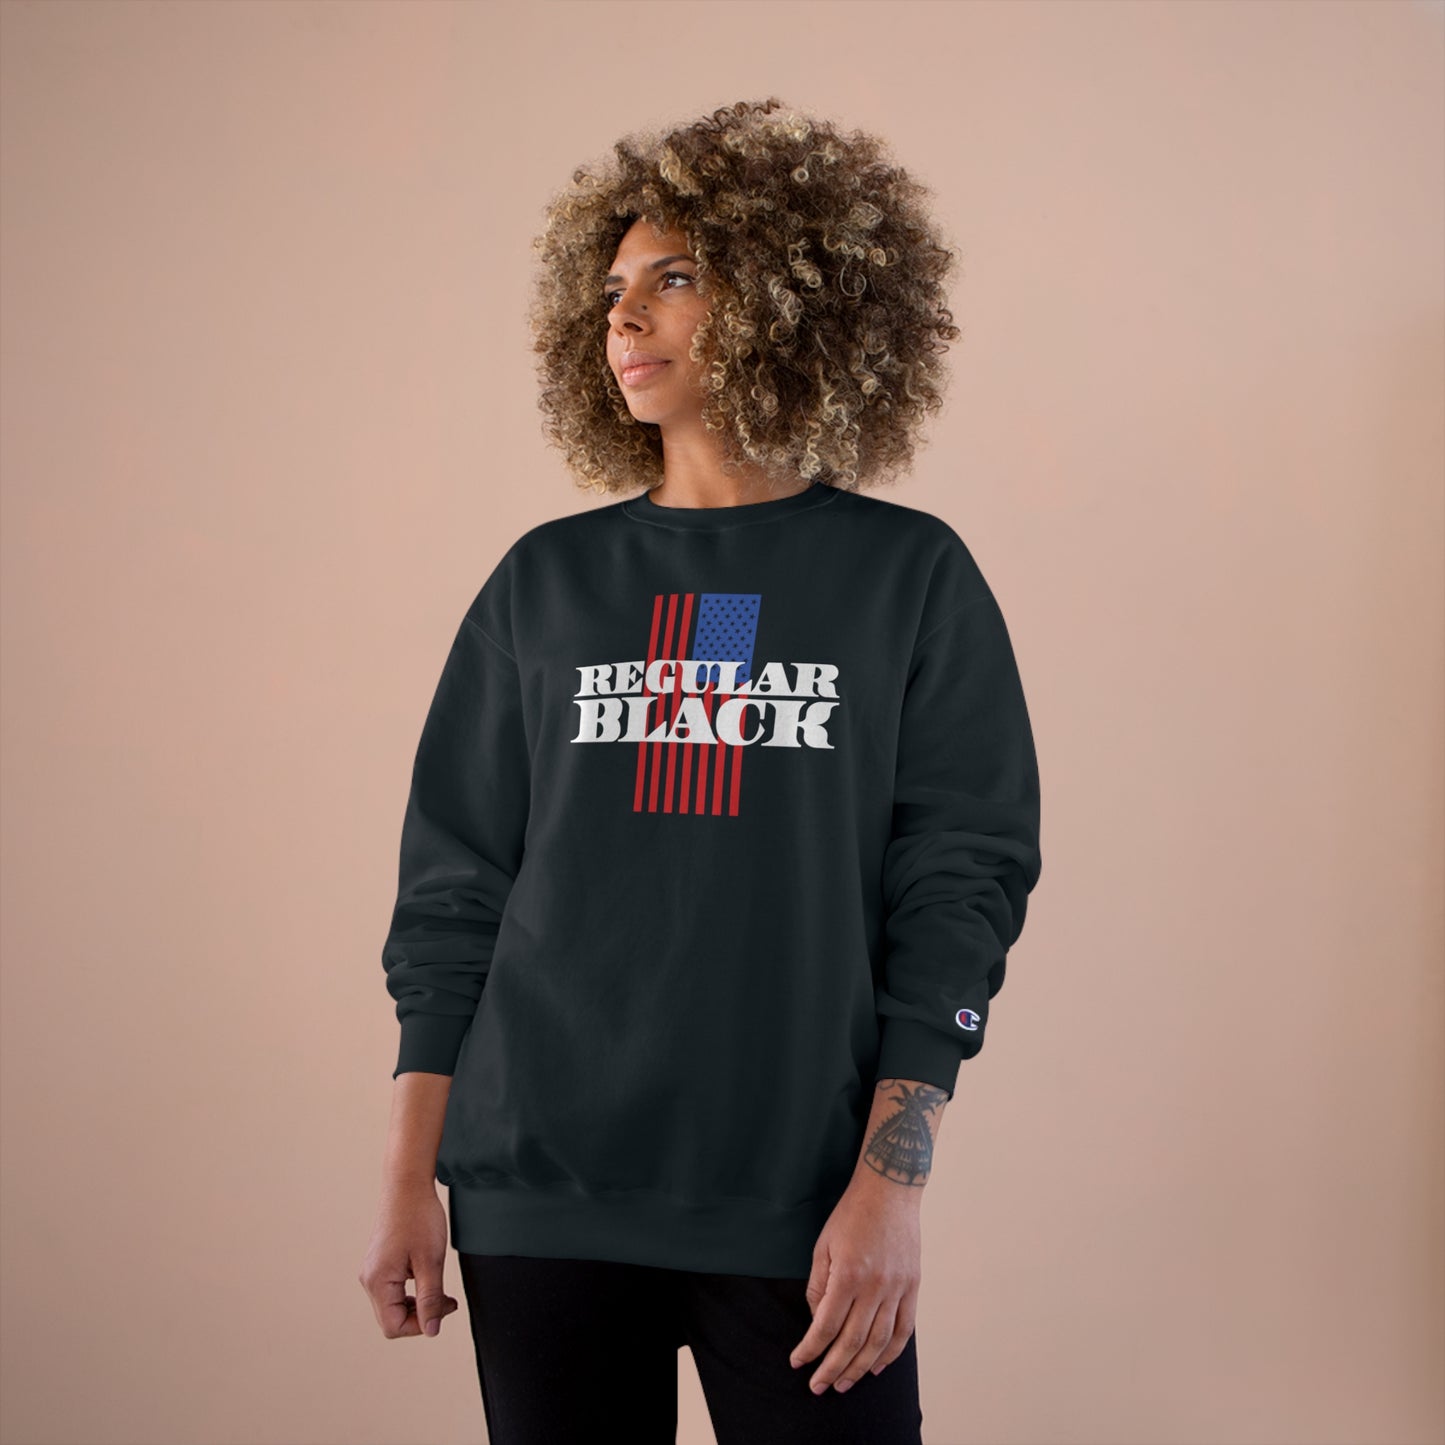 Regular Black Women's Sweatshirt - Black